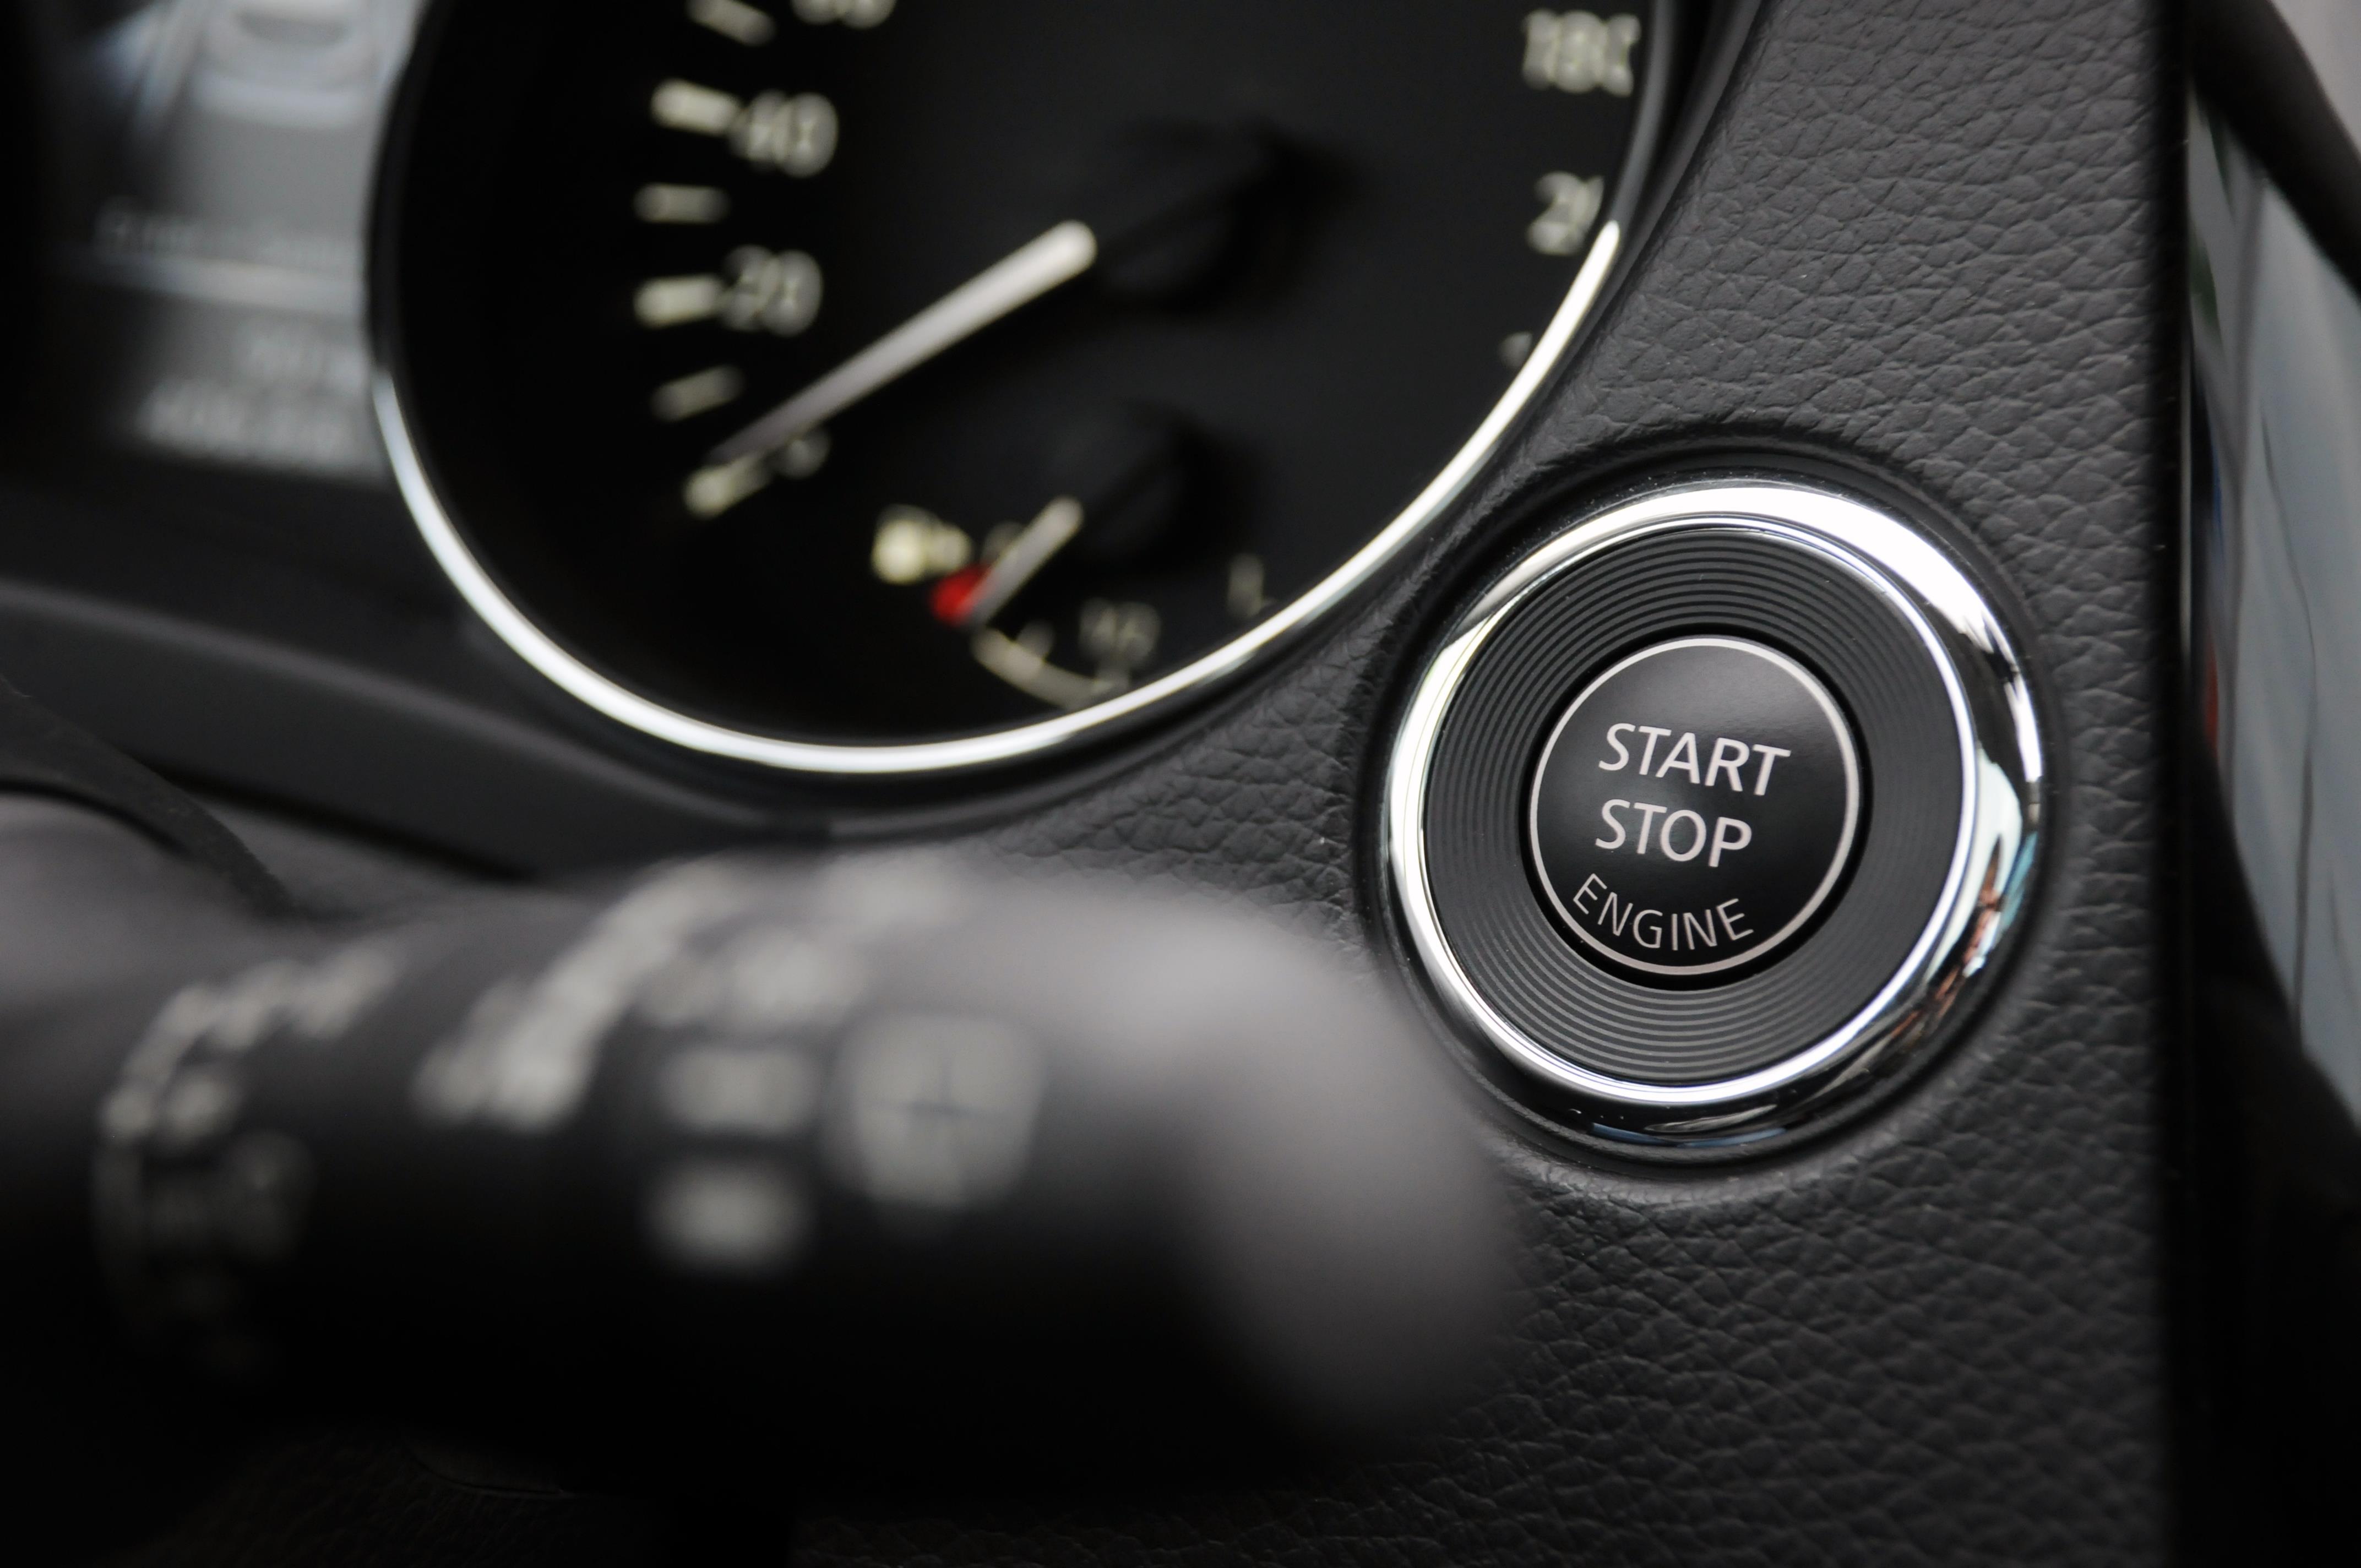 Tasarruf ederken 100 bin TL'den olmayın: Arabalarda 'Eco mod' ve Start-stop' özelliklerine dikkat!